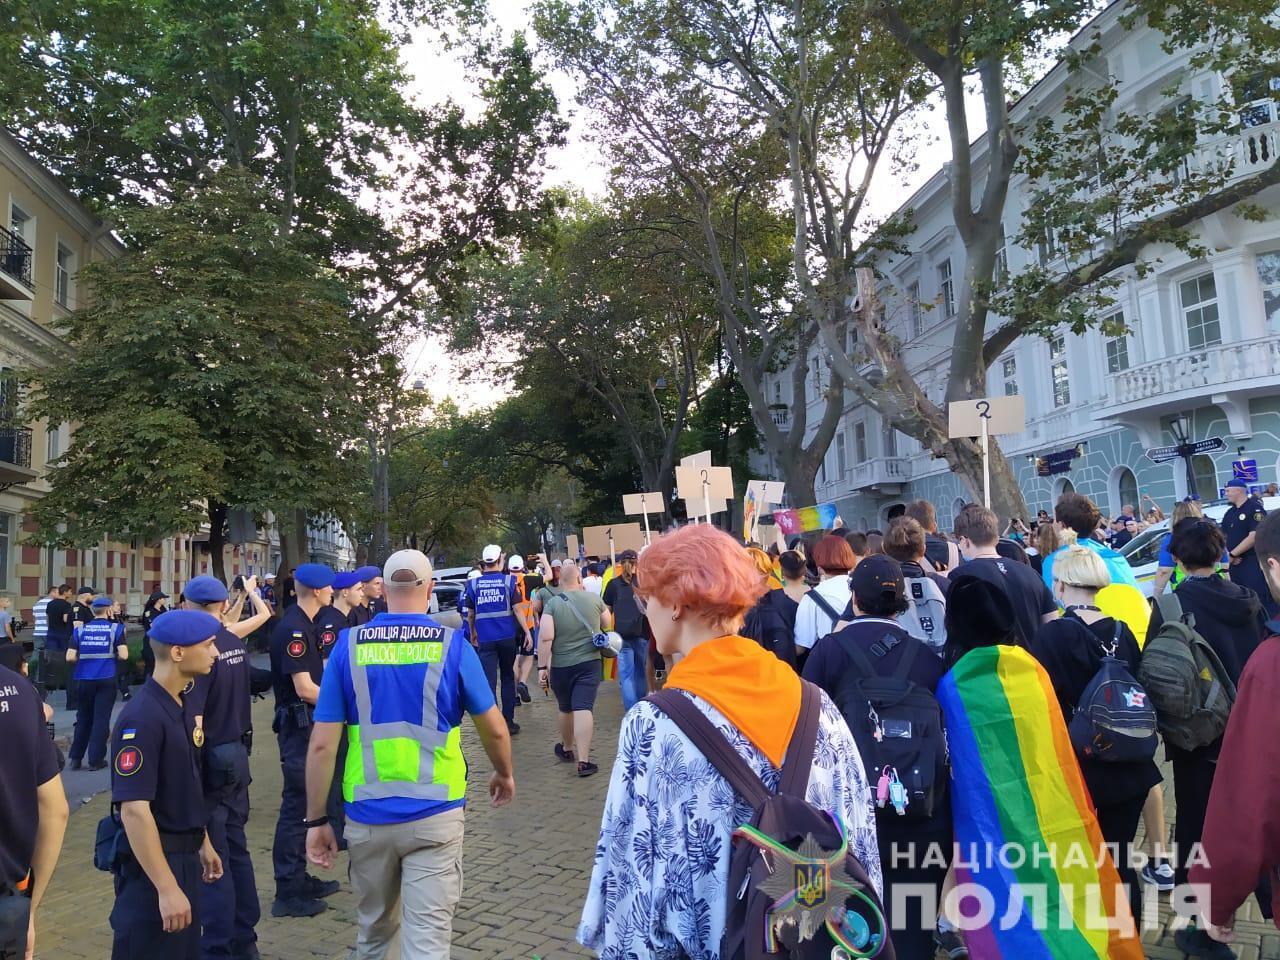 Микола Семенишин: правоохоронці забезпечили правопорядок під час «Маршу рівності» в Одесі